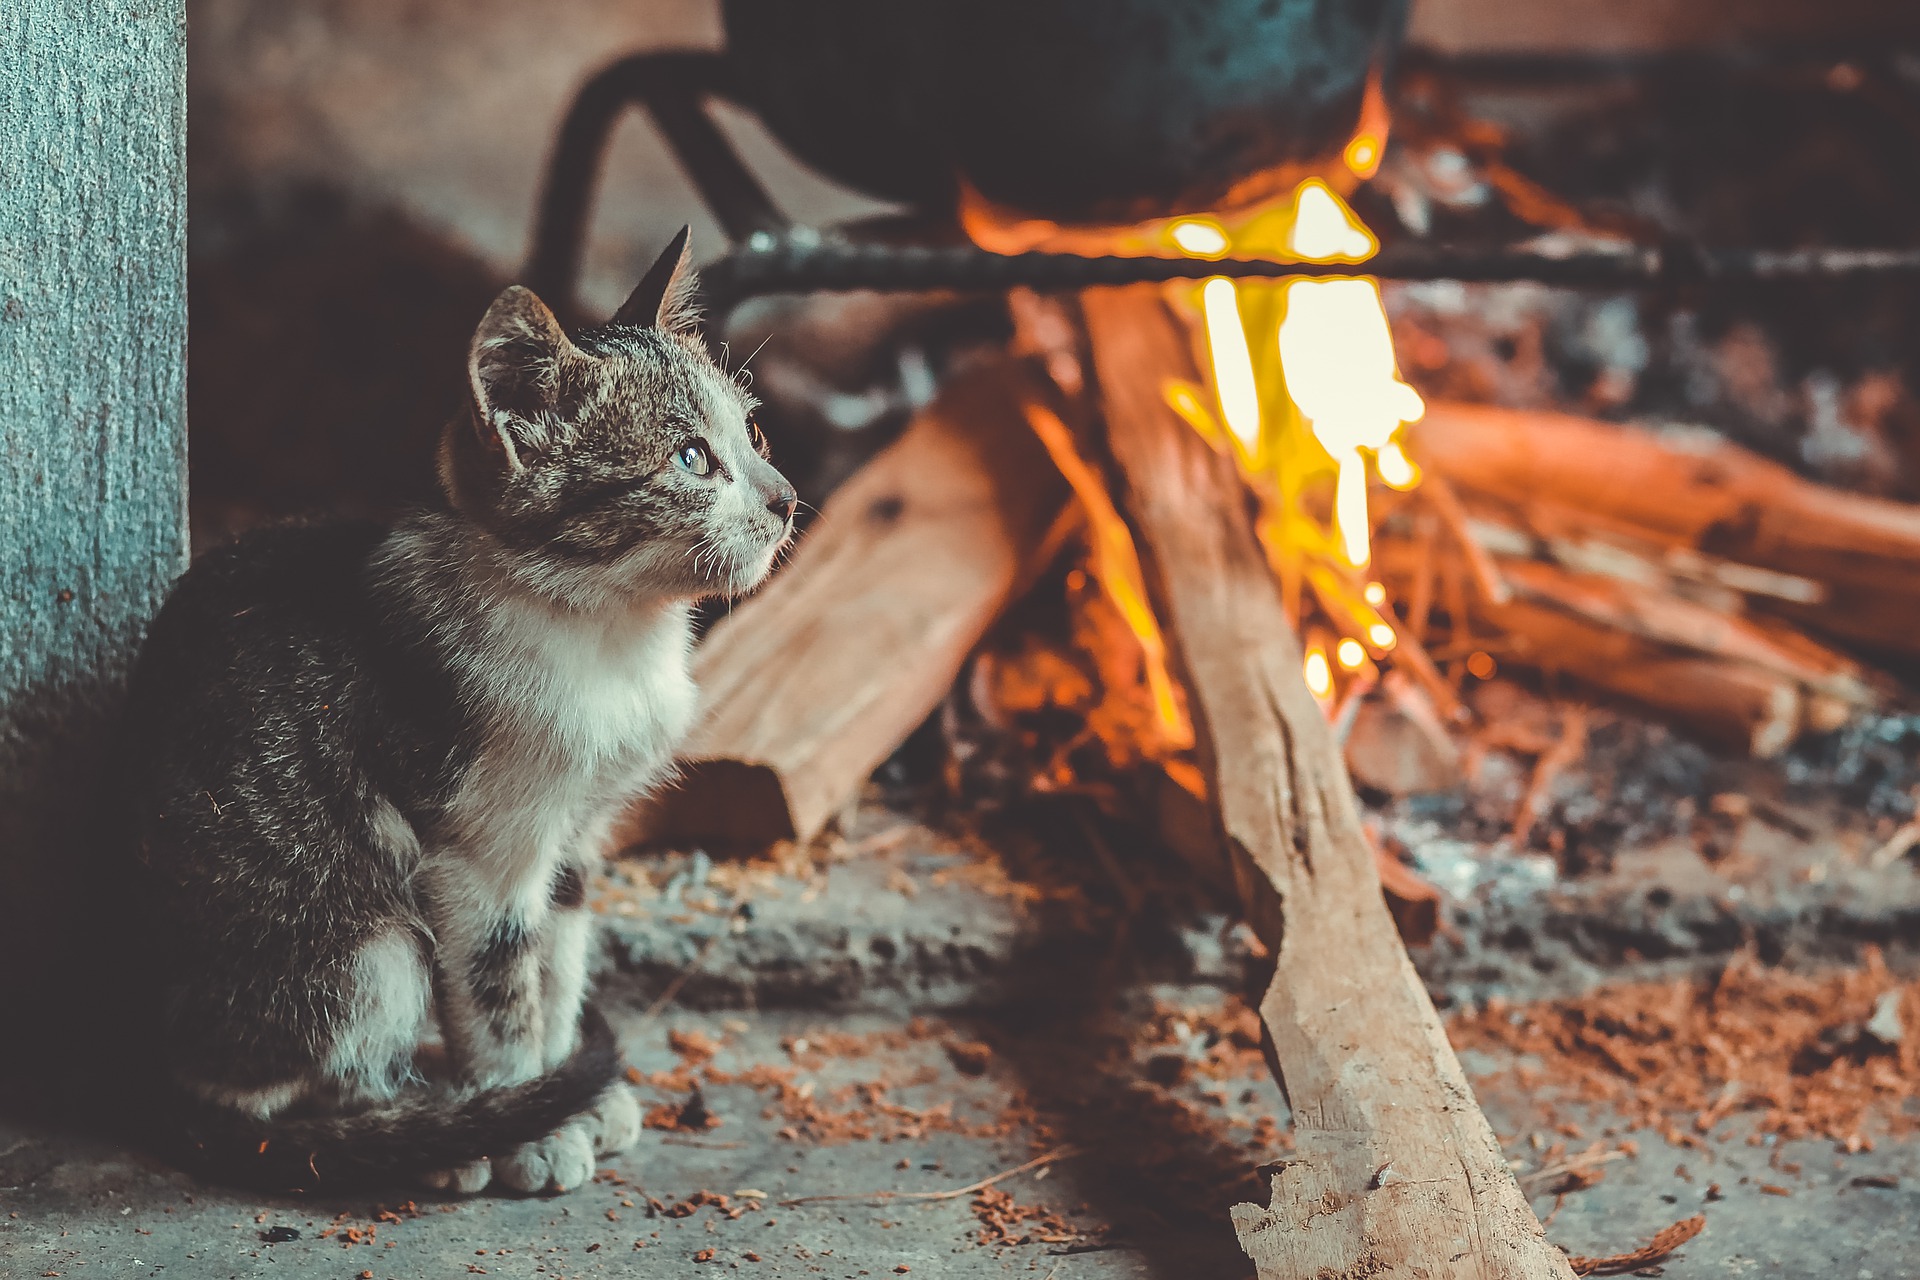 Gatos podem por fogo na sua casa, alerta Coreia do Sul após 107 incêndios causados por pets